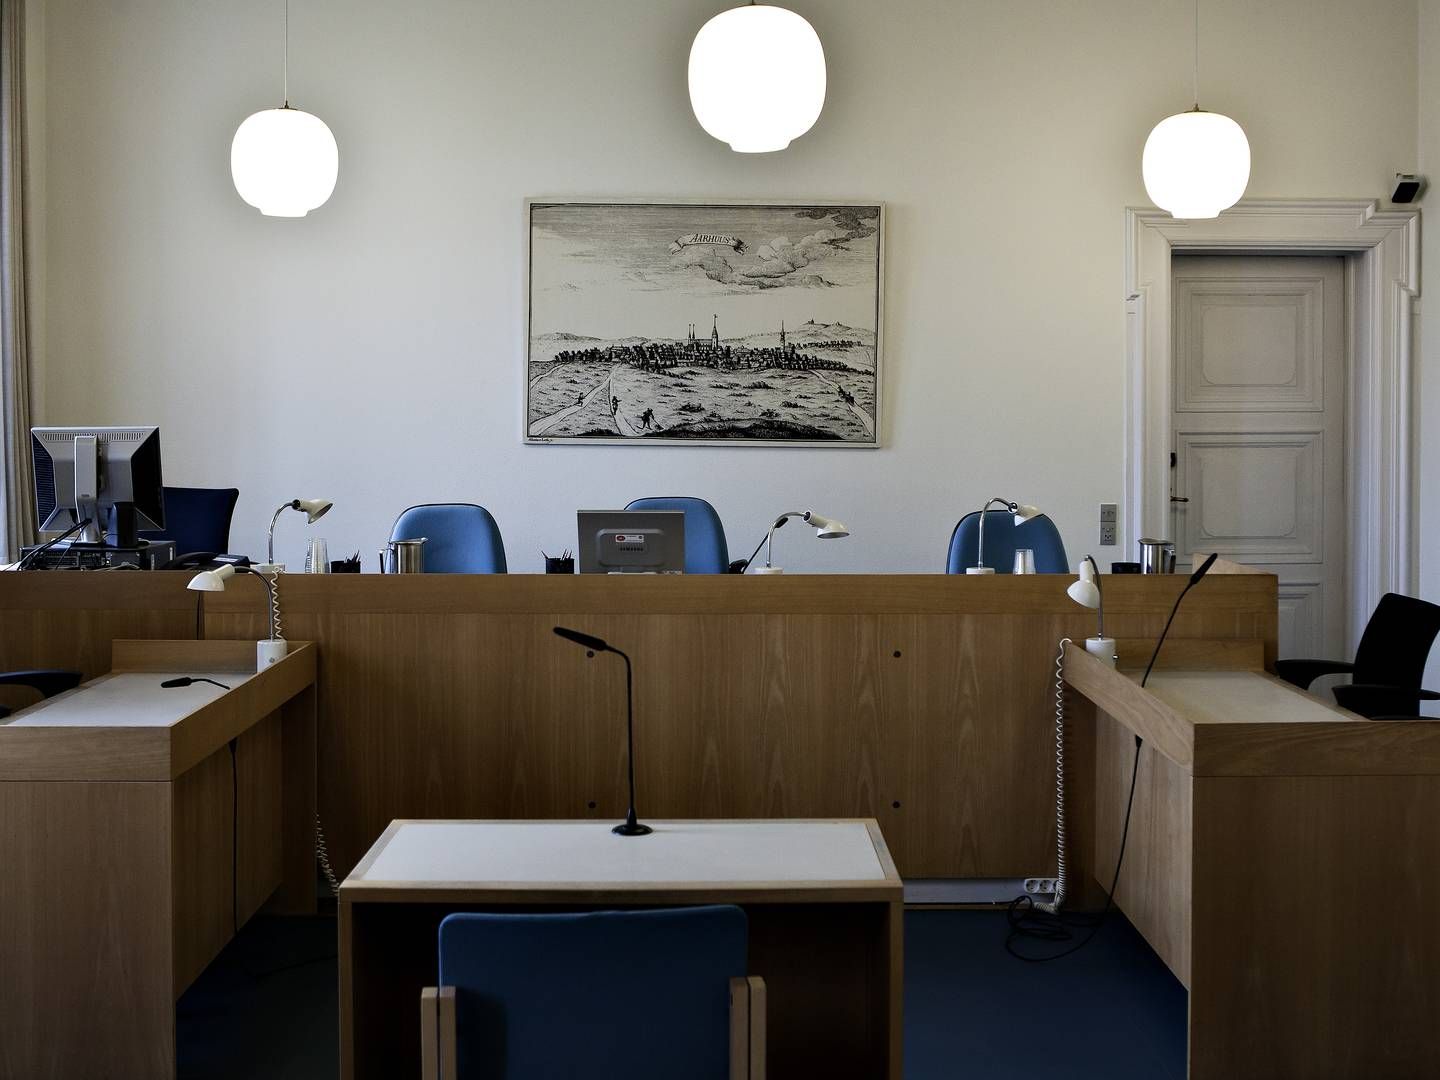 Flere af landets største retter oplever skift på retspræsidentposten. I foråret blev Karen Thegen ny retspræsident ved Retten i Aarhus. | Foto: Sisse Dupont/JPA